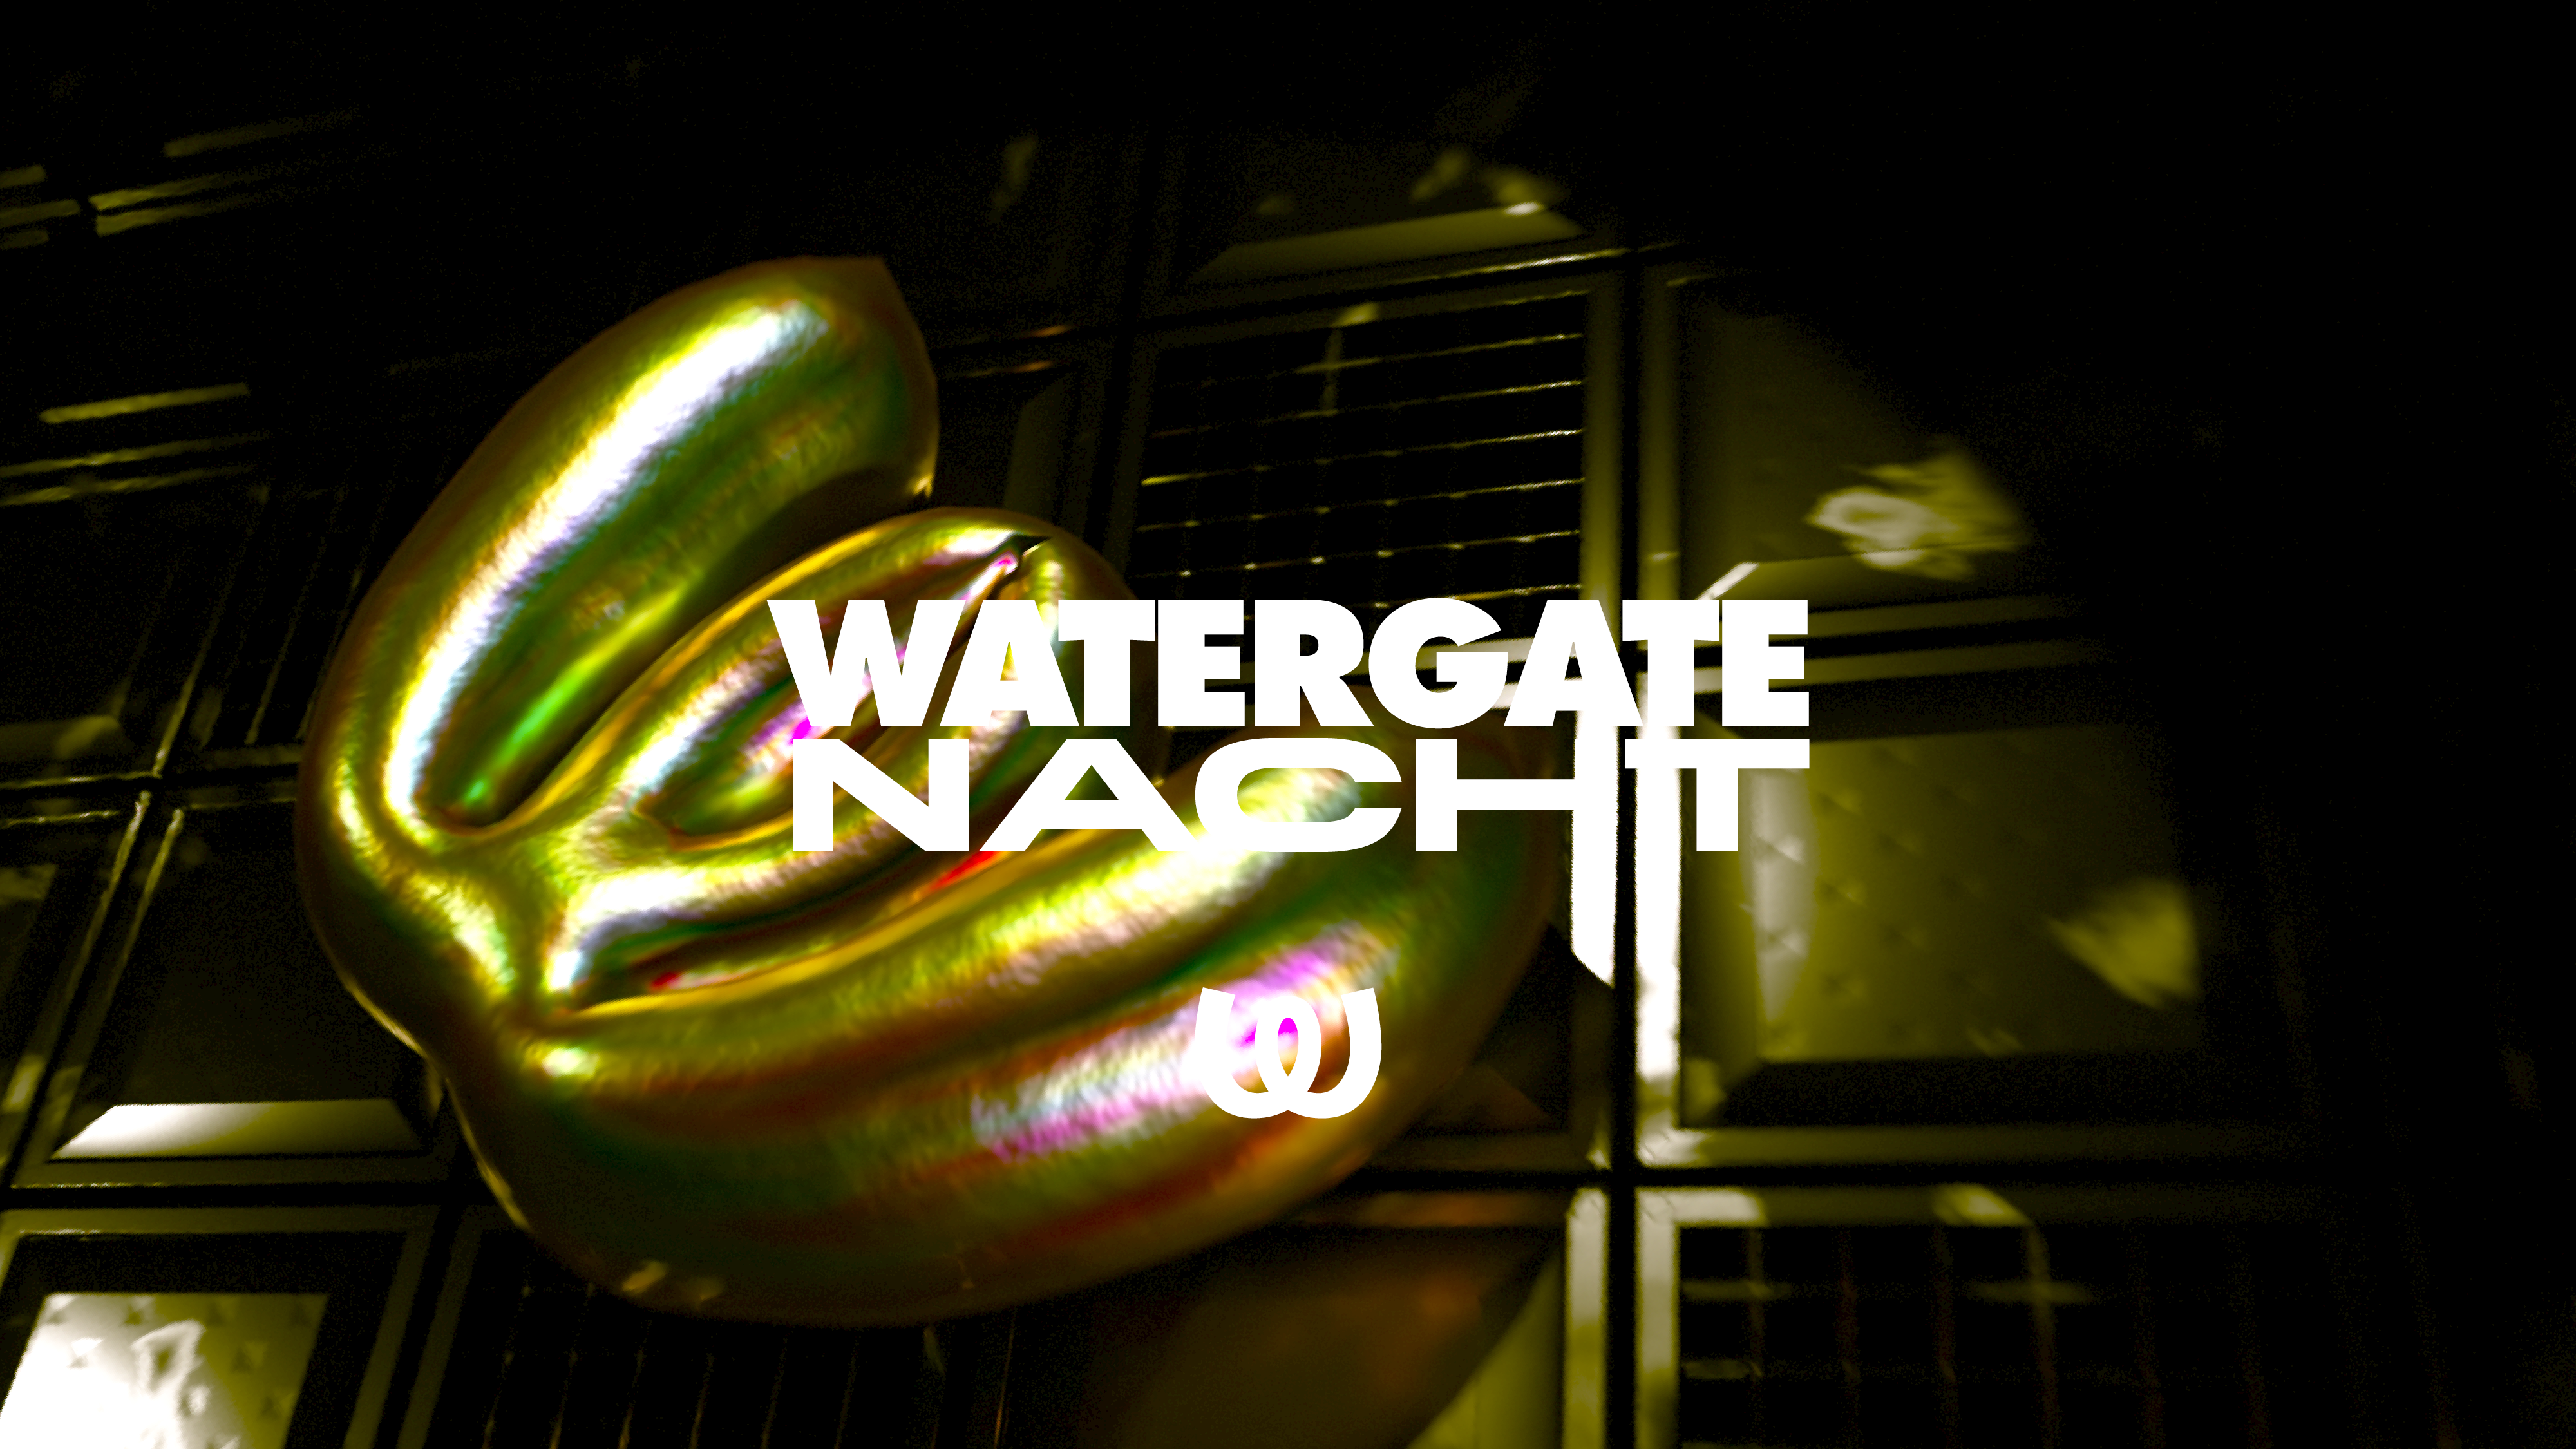 Watergate Nacht: Âme LIVE, Trikk, Biesmans, Miura, SKALA, Dj Norma - フライヤー表